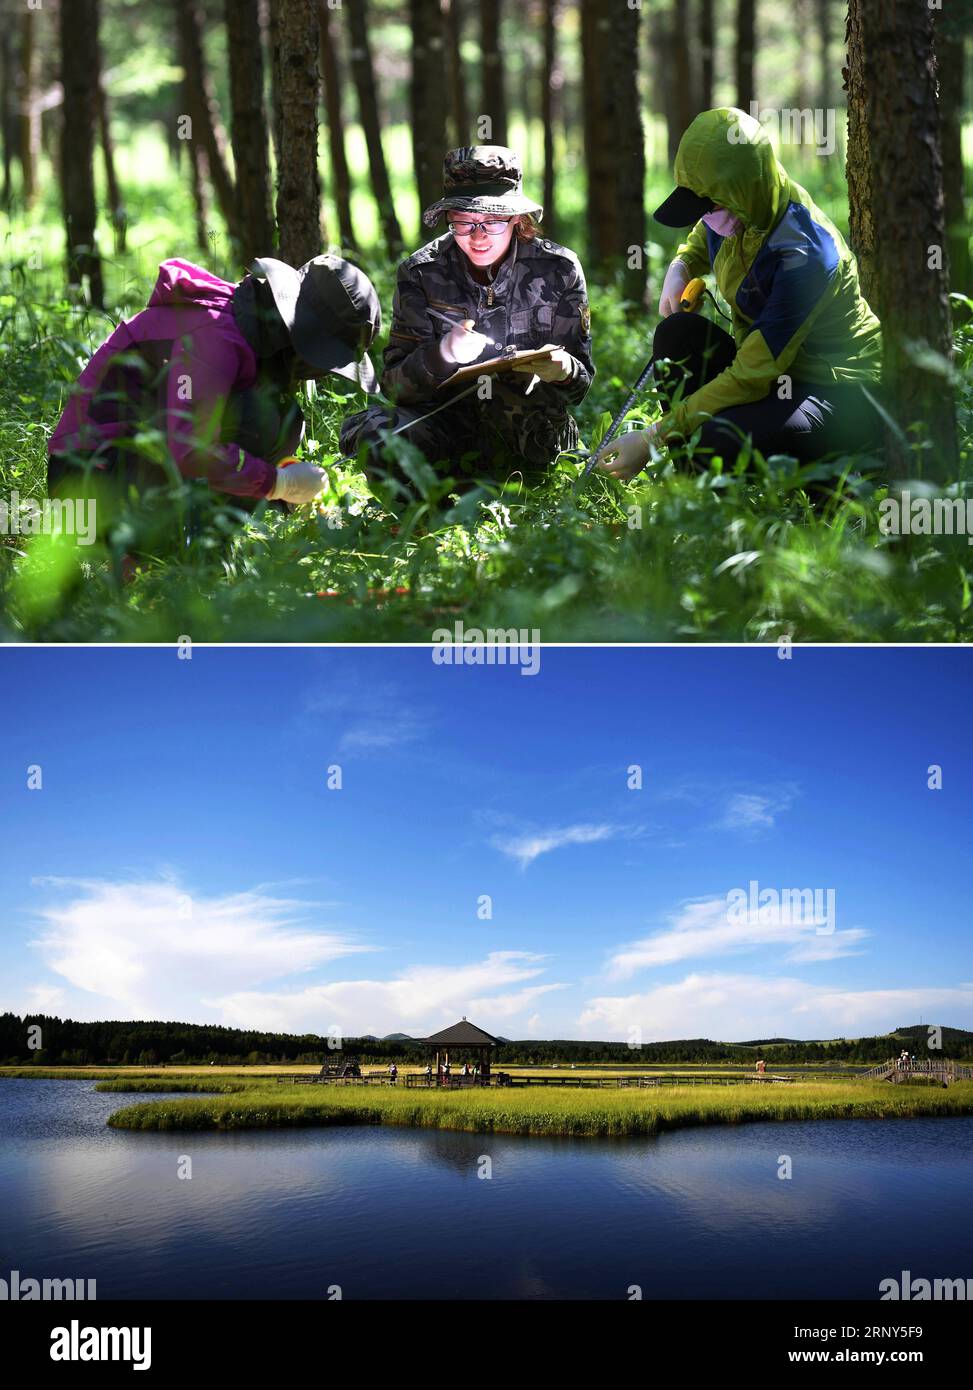 (180228) -- PEKING, 28. Februar 2018 -- kombiniertes Foto zeigt Mitarbeiter, die Daten im Saihanba-Wald sammeln, 12. Juli 2017 (up) und Touristen, die das Qixing Lake Scenic Area des Saihanba State Forest Park in der nordchinesischen Provinz Hebei besuchen, 11. Juli 2017. Die jährlichen politischen Sitzungen des Nationalen Volkskongresses (NPC) und des Nationalen Komitees der Politischen Konsultativkonferenz des chinesischen Volkes (CPPCC) sollen im März 2018 stattfinden. In den beiden Sitzungen werden die Entwicklungsagenden überprüft und diskutiert und Schlüsselpolitiken verabschiedet. Jahr 2018 Mark t Stockfoto